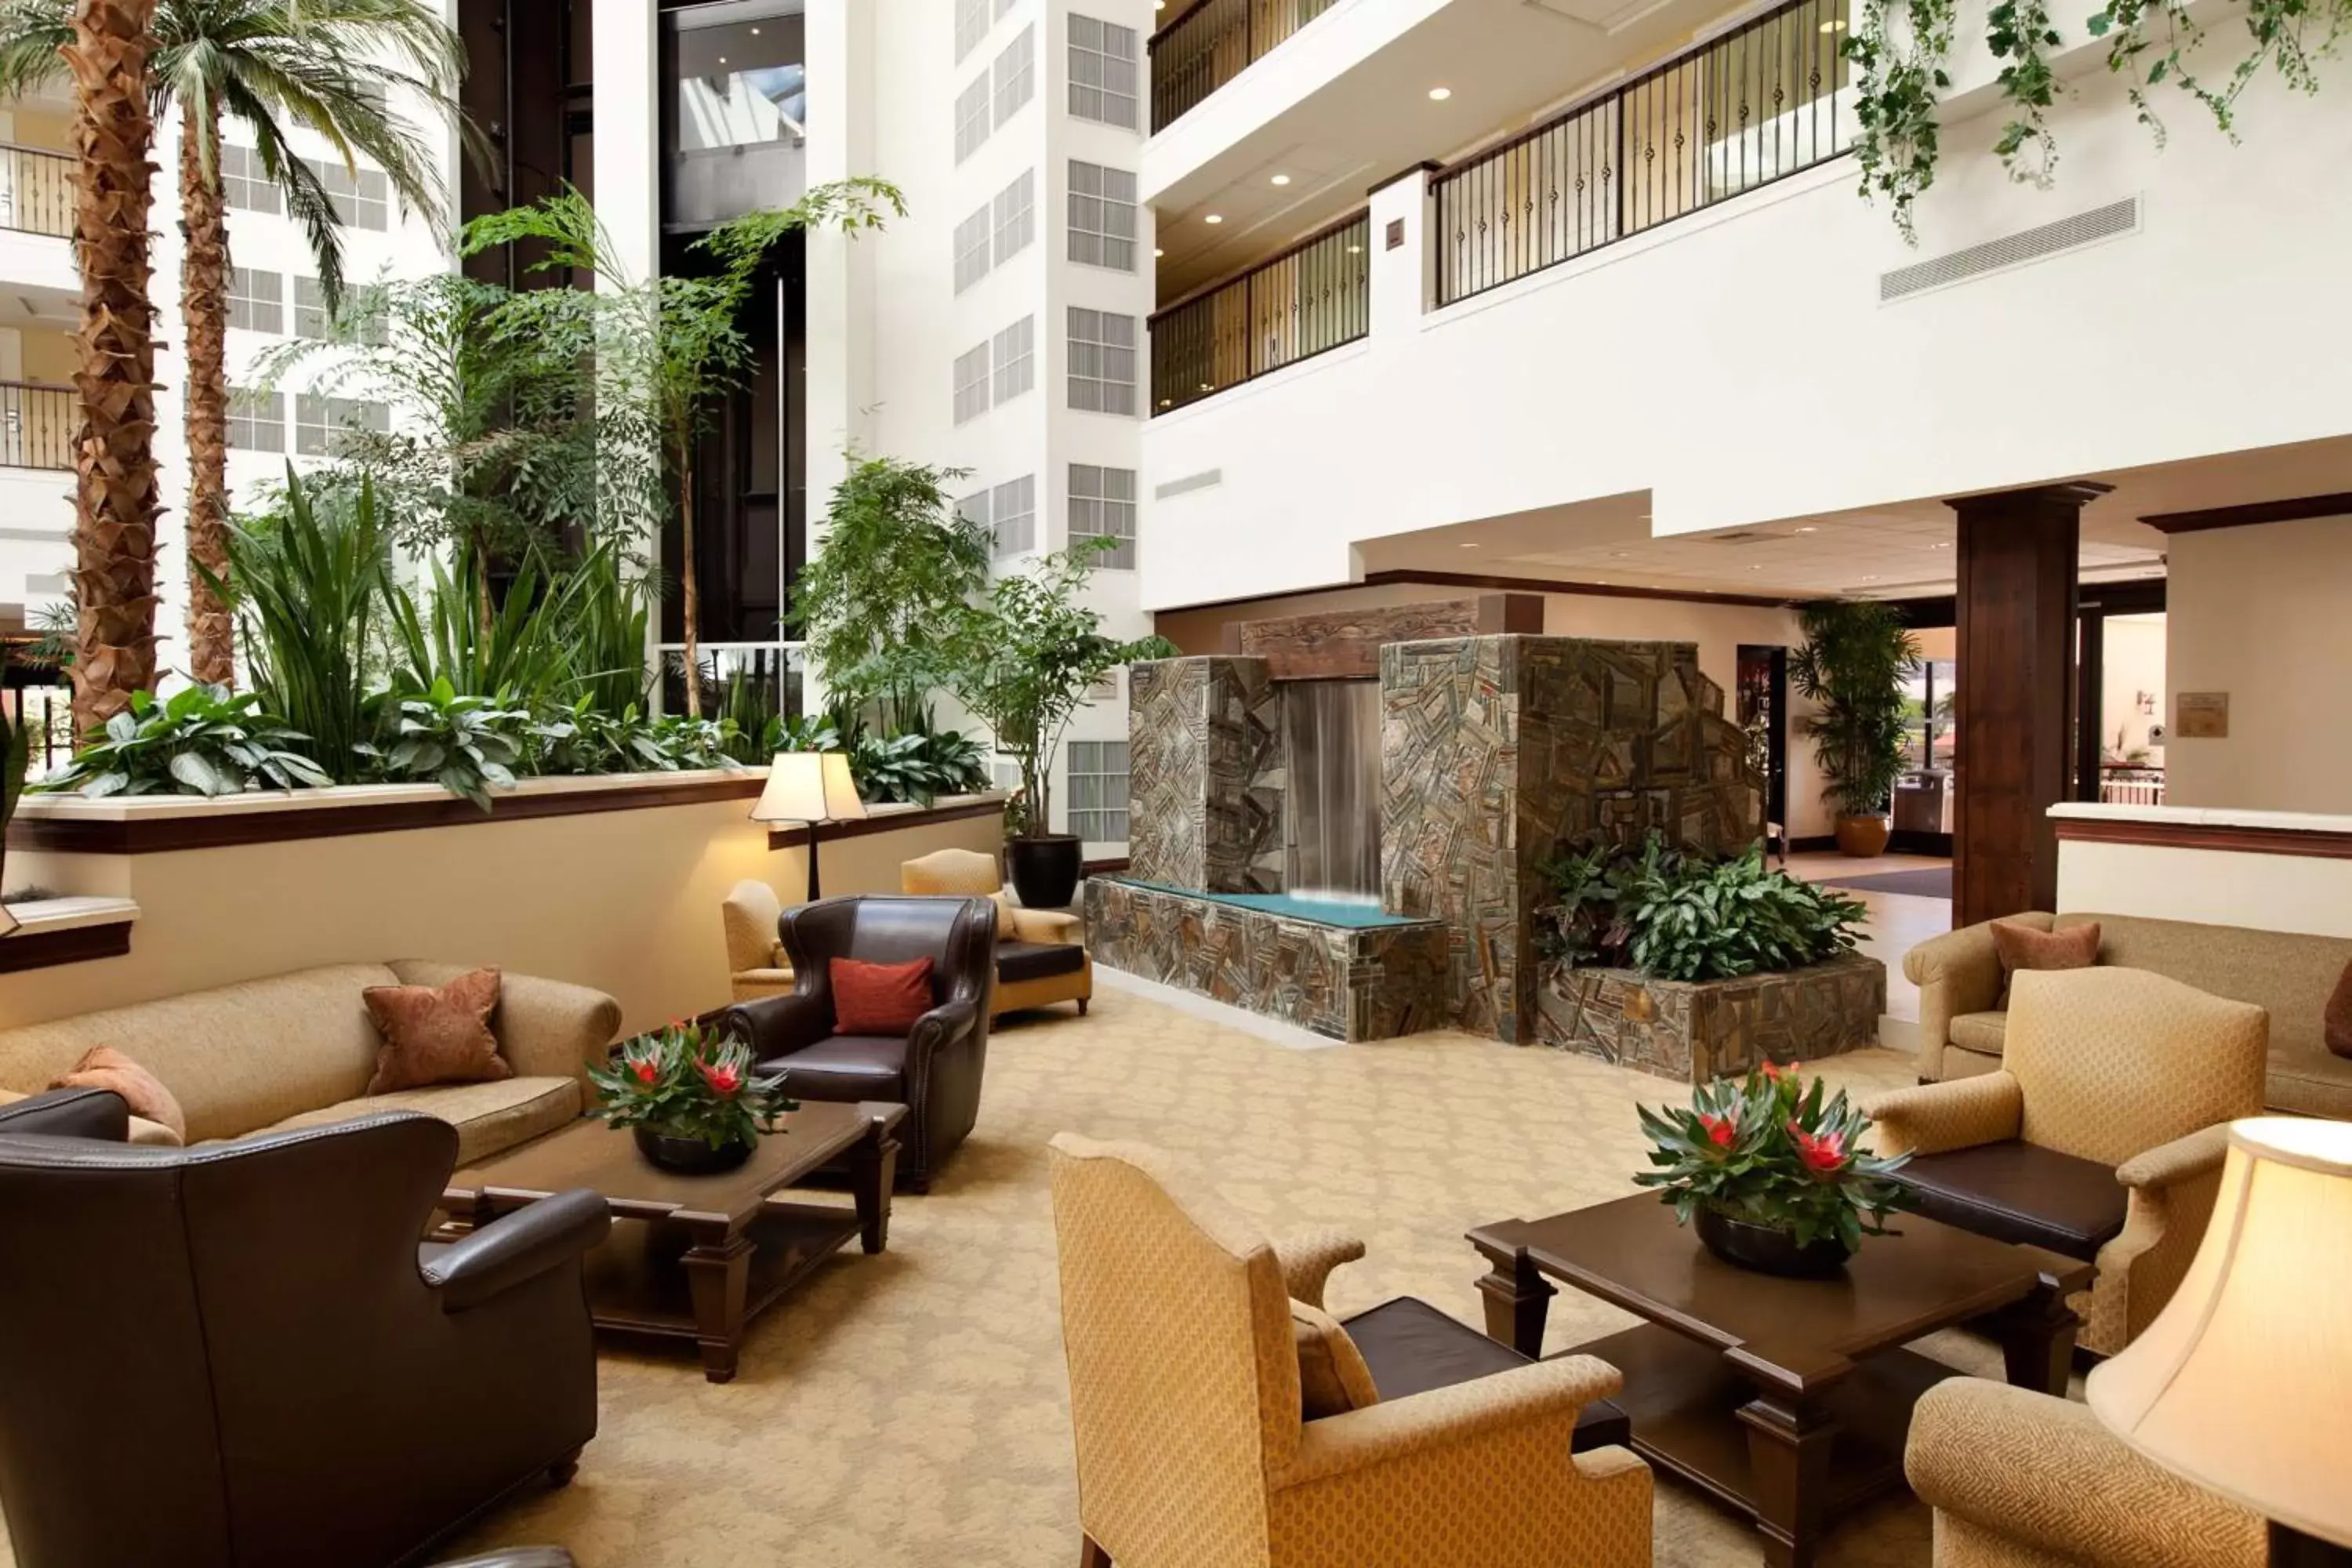 Lobby or reception in Embassy Suites La Quinta Hotel & Spa